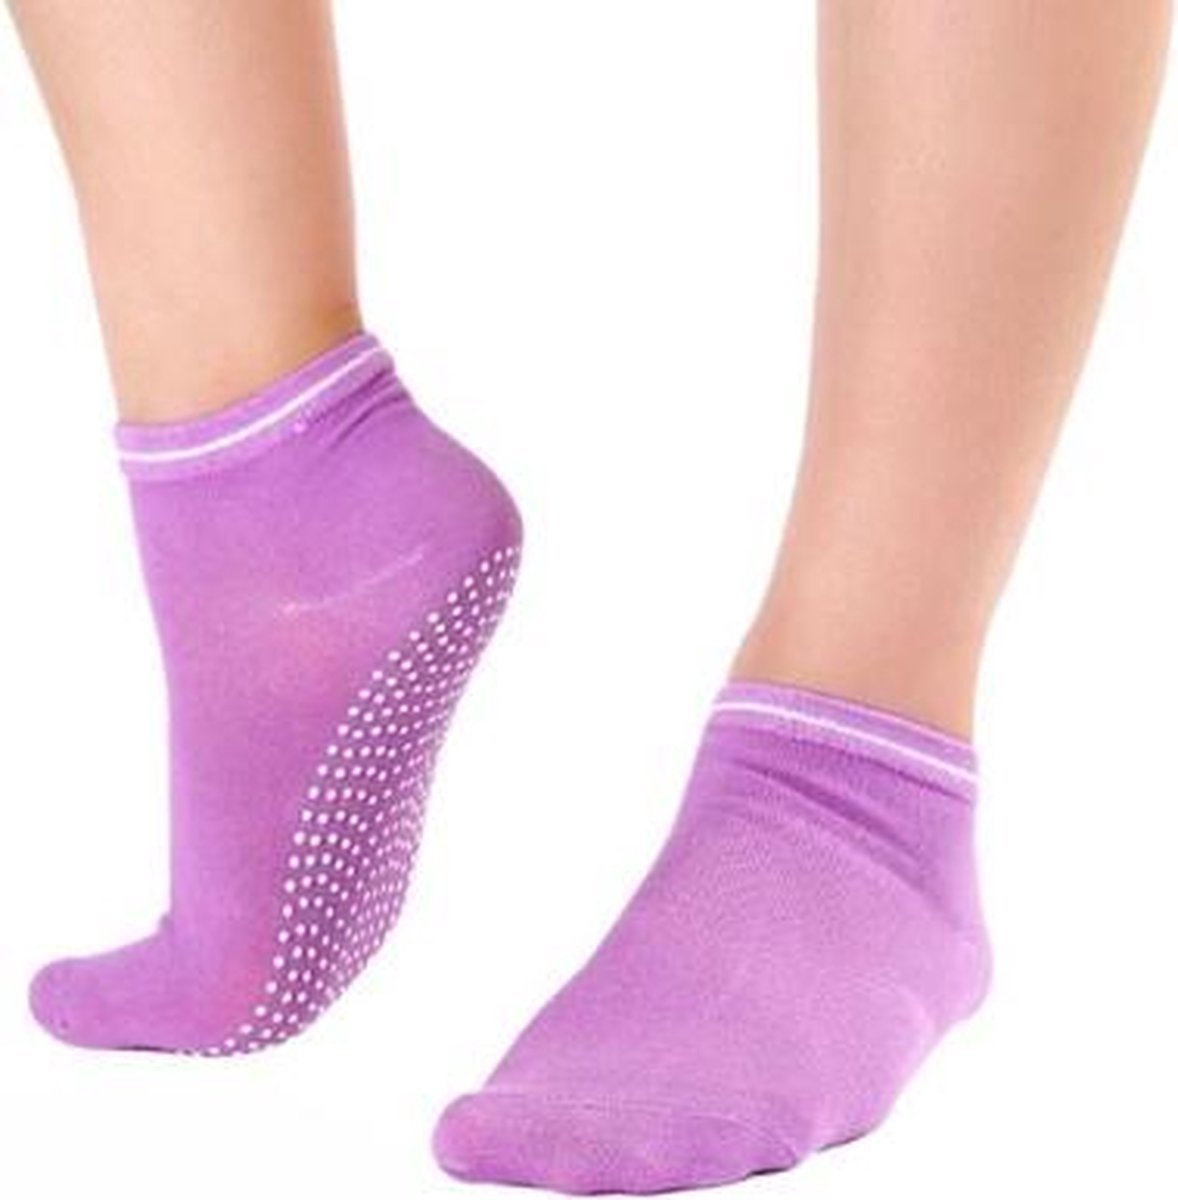 CHPN - Sokken - Anti-slip sokken - Sportsokken -Yoga sokken - Fitness sokken - Paars - Maat 35/40 - Pilates sokken